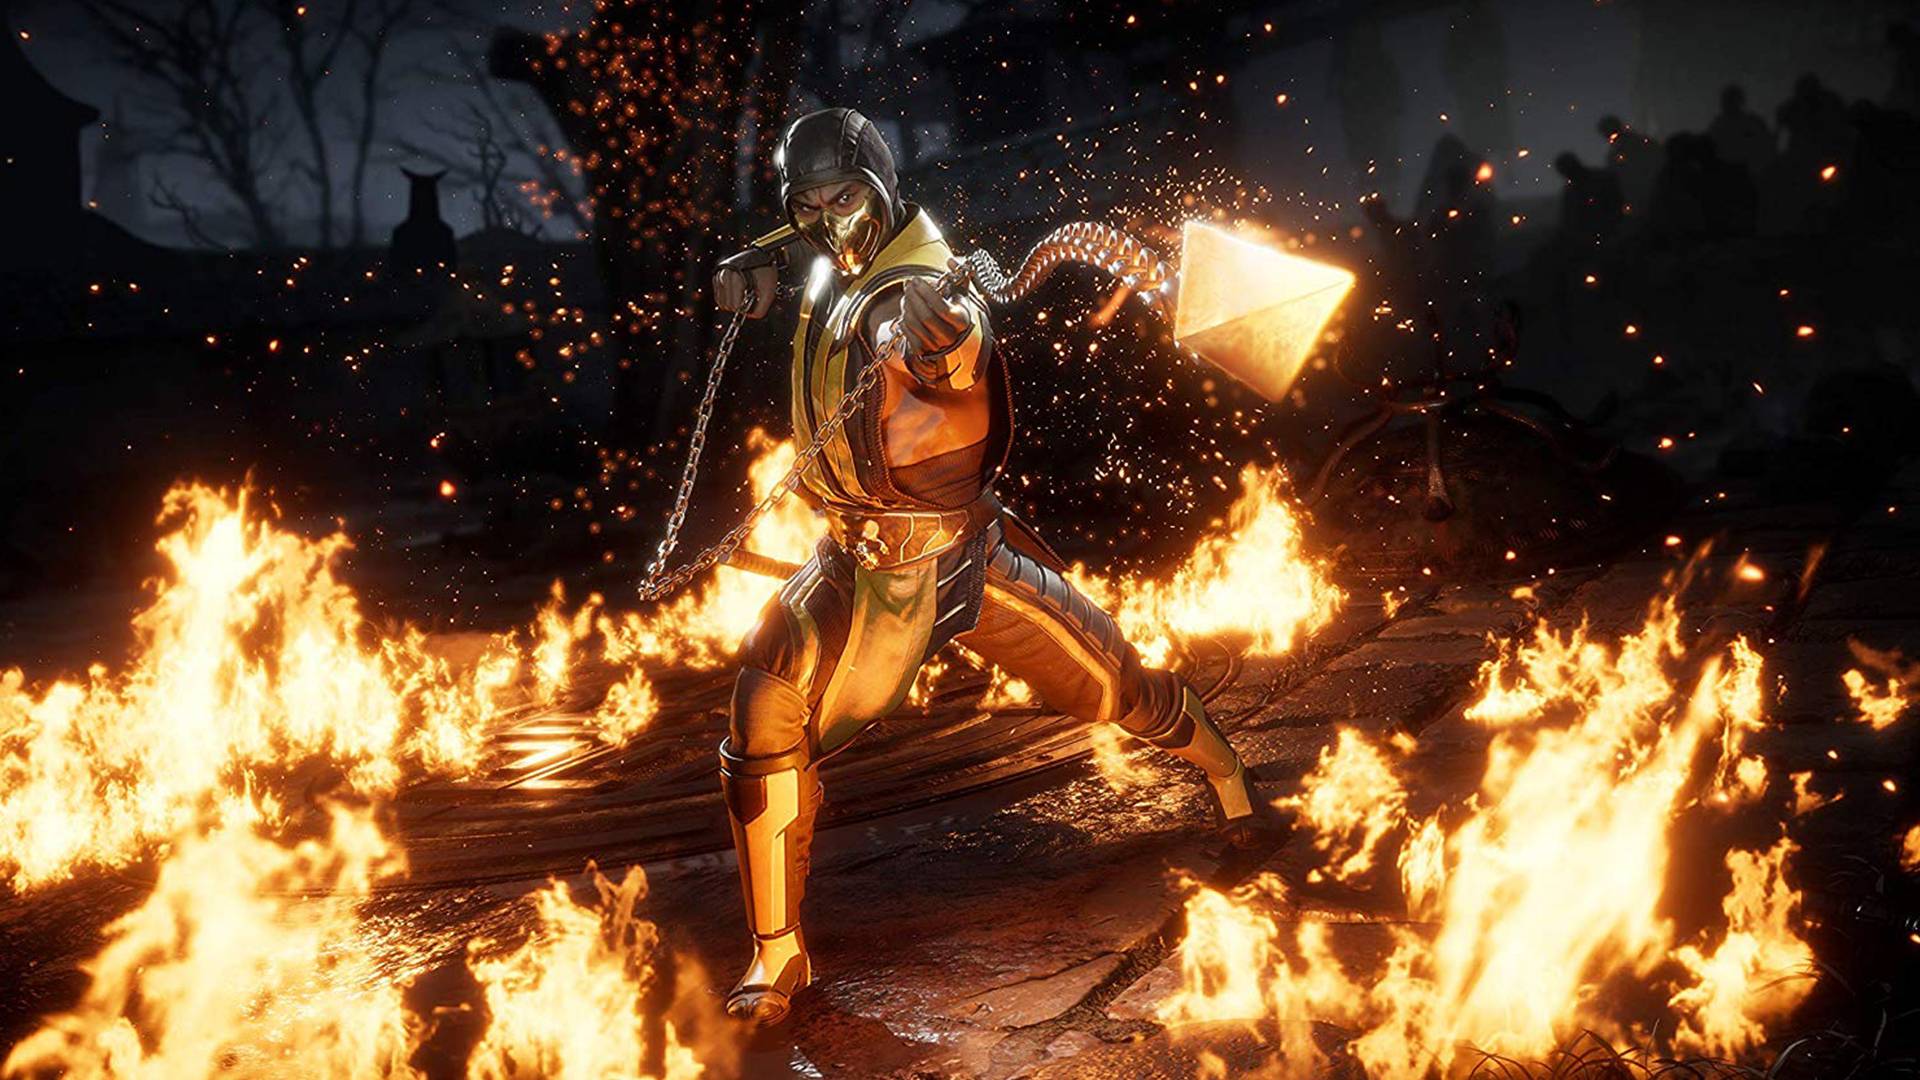 Mortal Kombat 2021: tudo o que sabemos sobre a reinicialização (até agora)